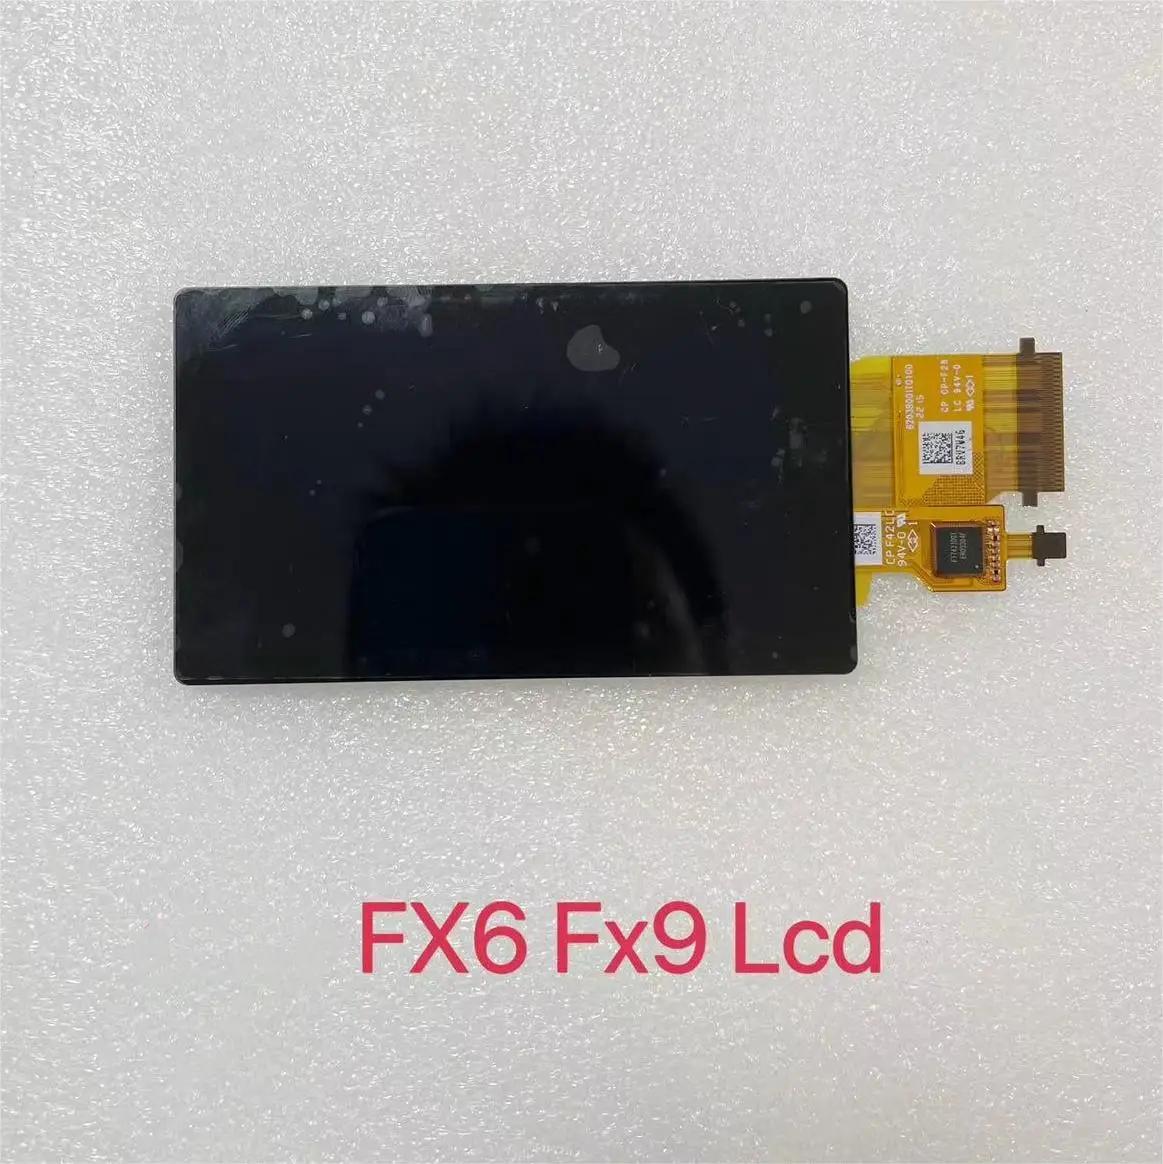  FX6 FX9  LCD  ī޶  ǰ